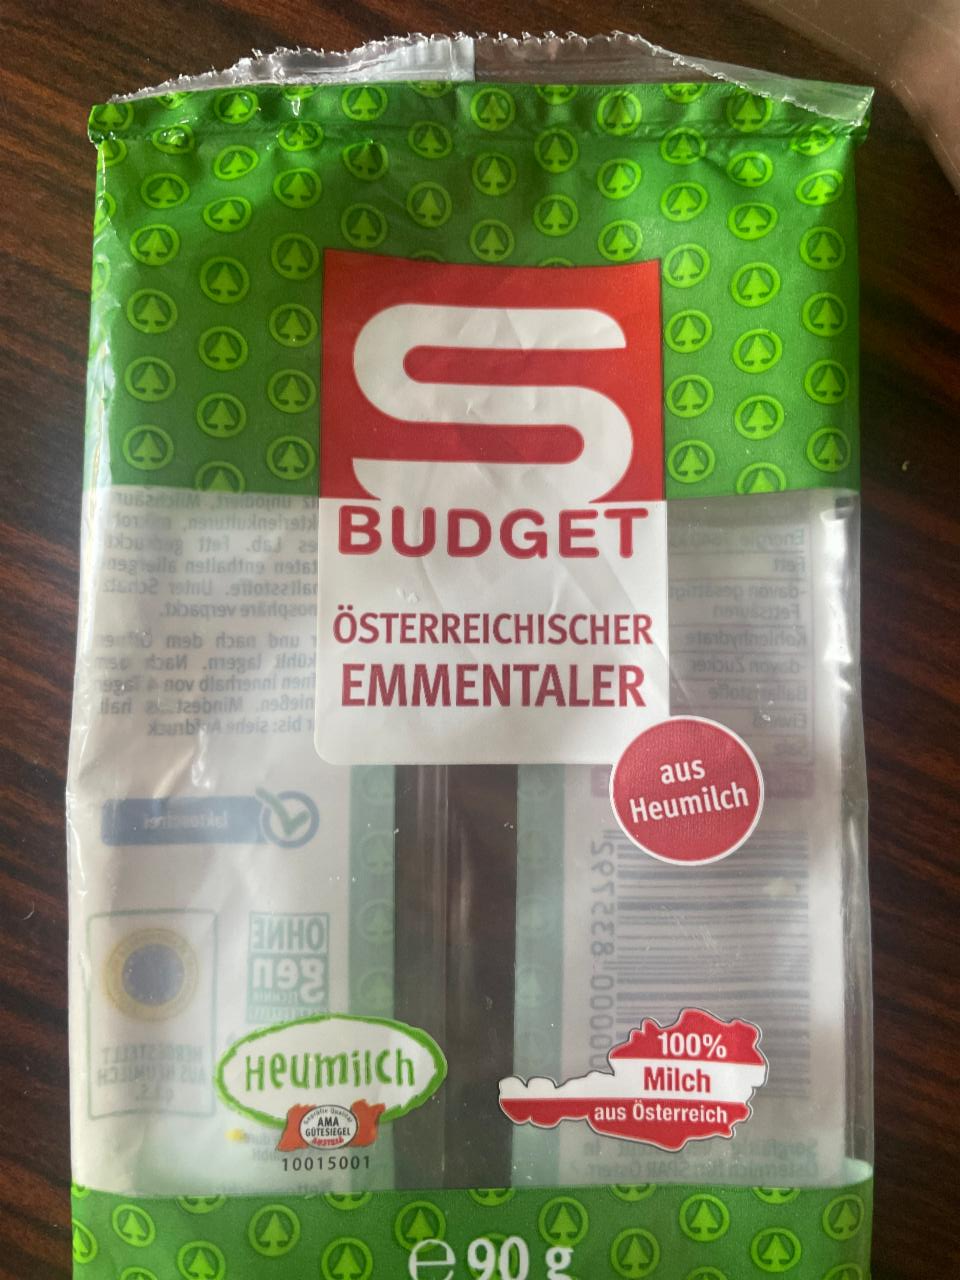 Fotografie - Österreichischer Emmentaler S Budget